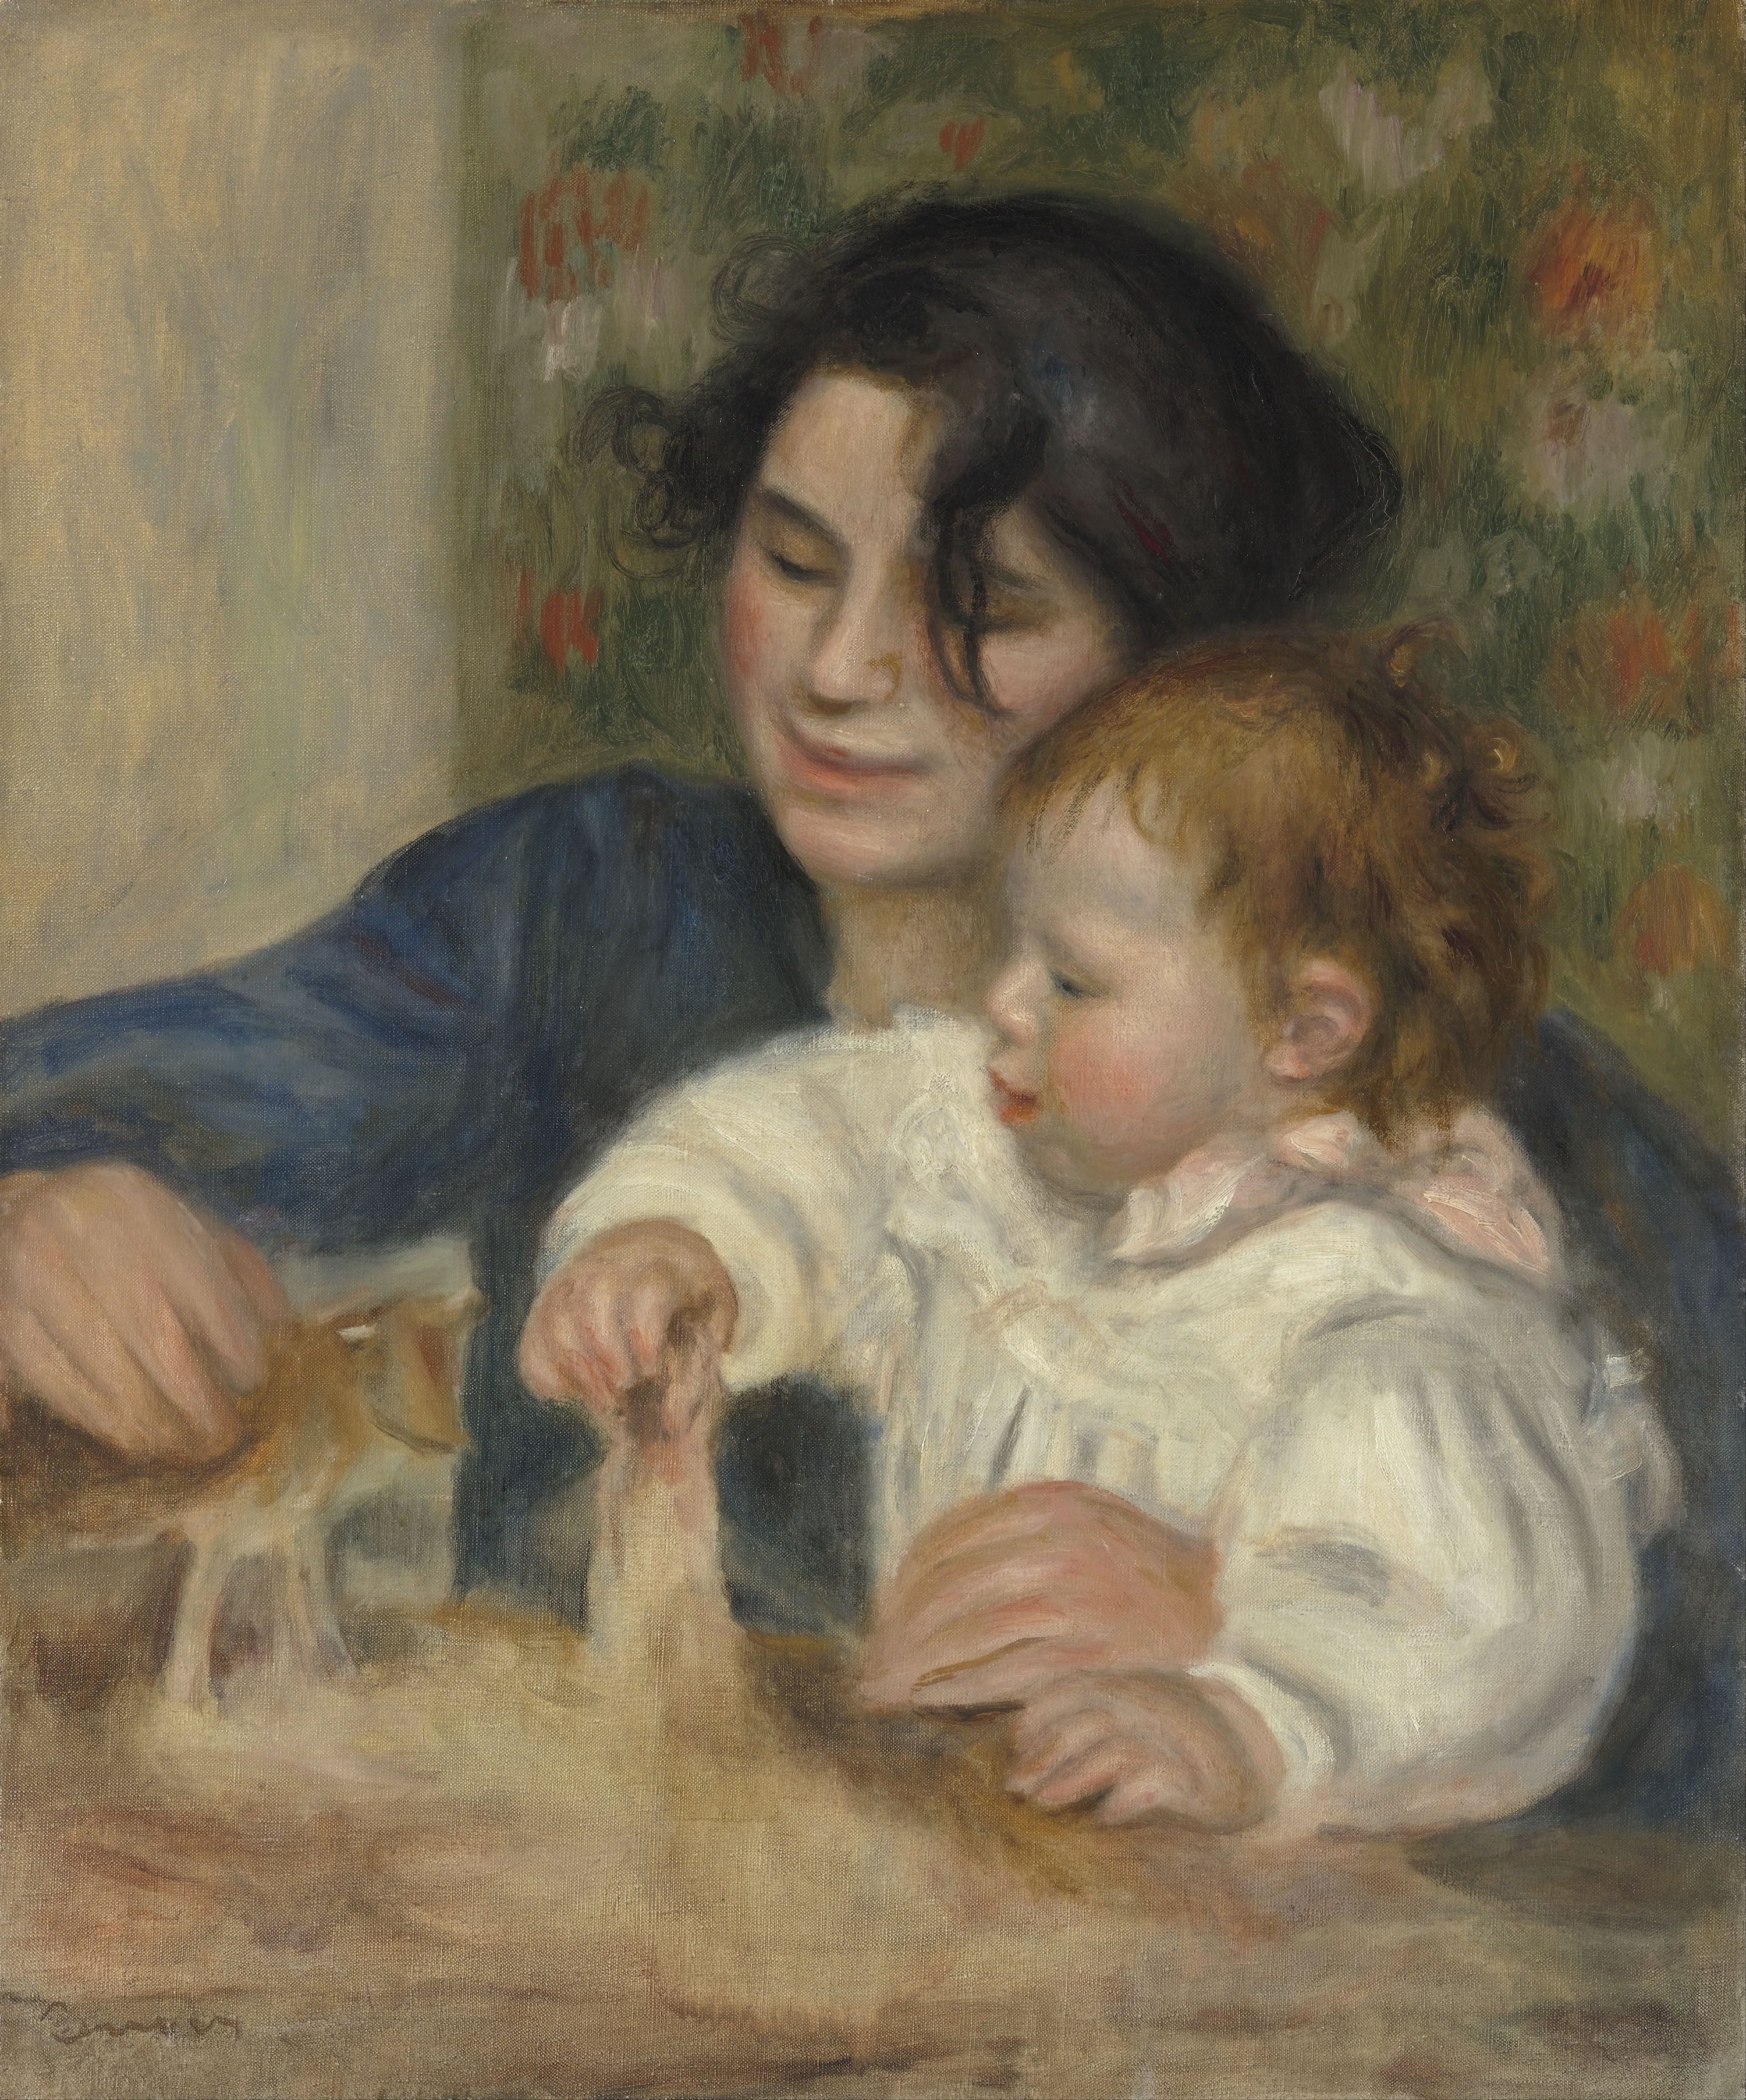 Gabrielle Renard and Jean by Pierre-Auguste Renoir - 1895-1896 - 65 × 54 cm Musée de l'Orangerie